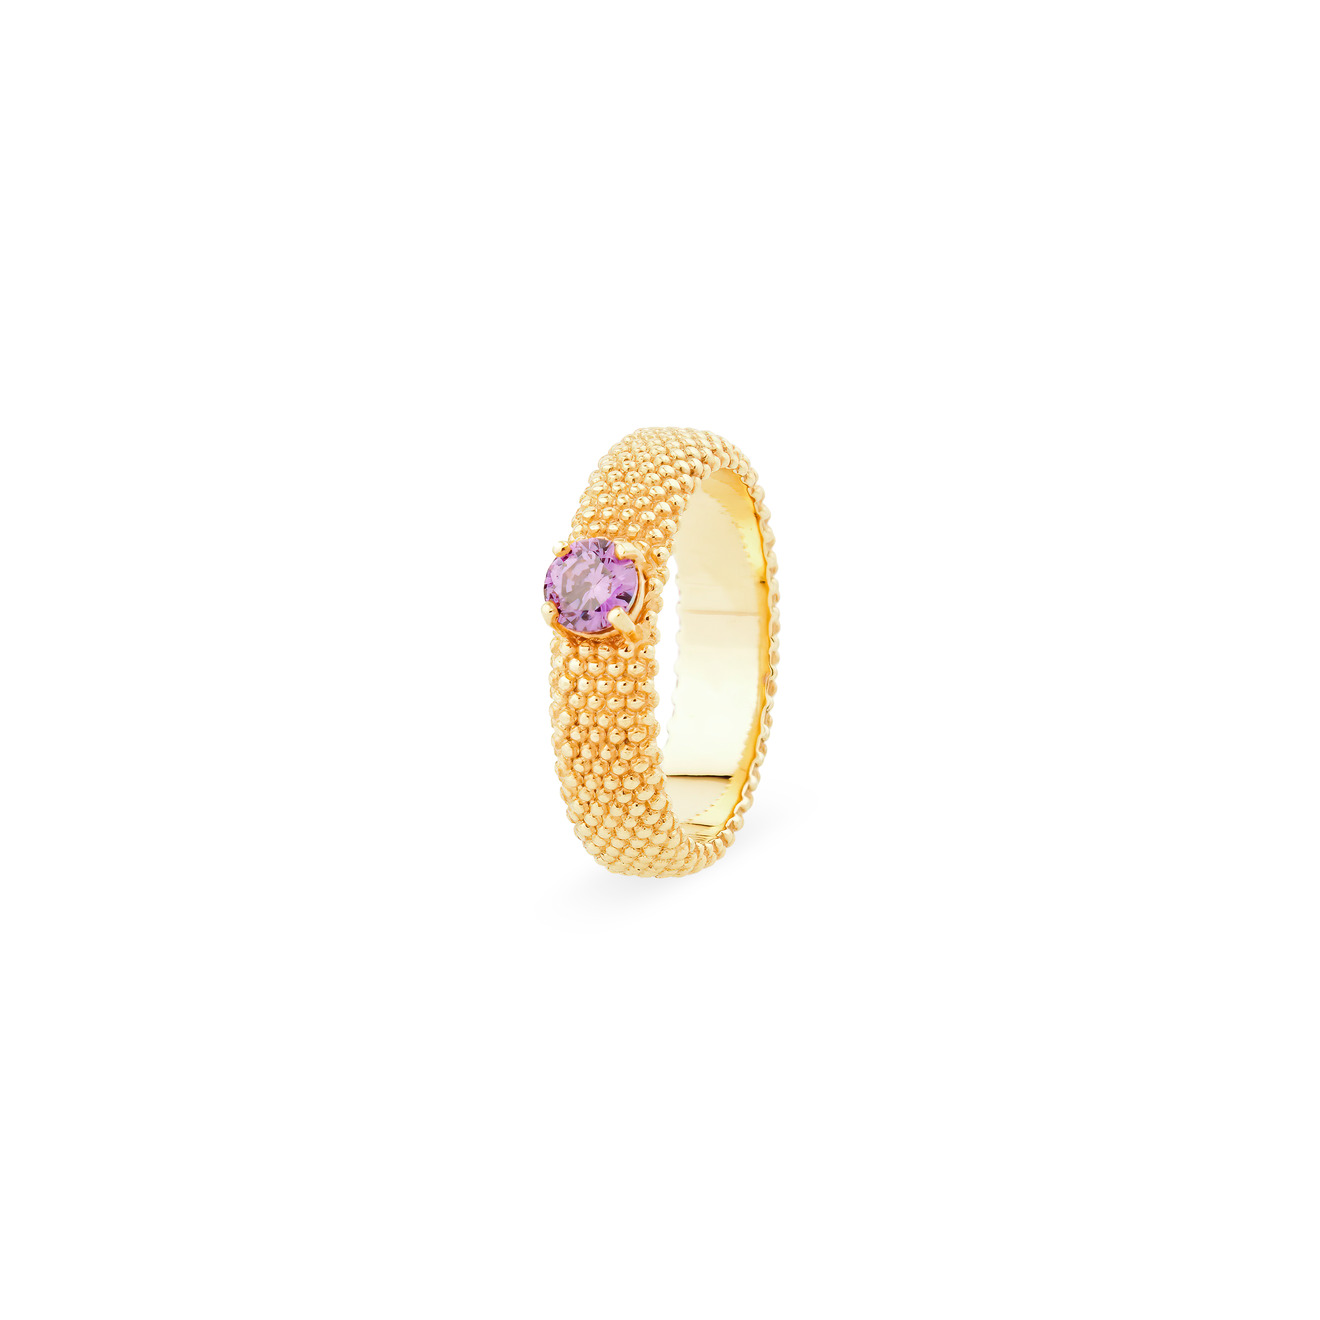 KRASHE jewellery Позолоченное кольцо «Золотые мурашки» с фиолетовым фианитом